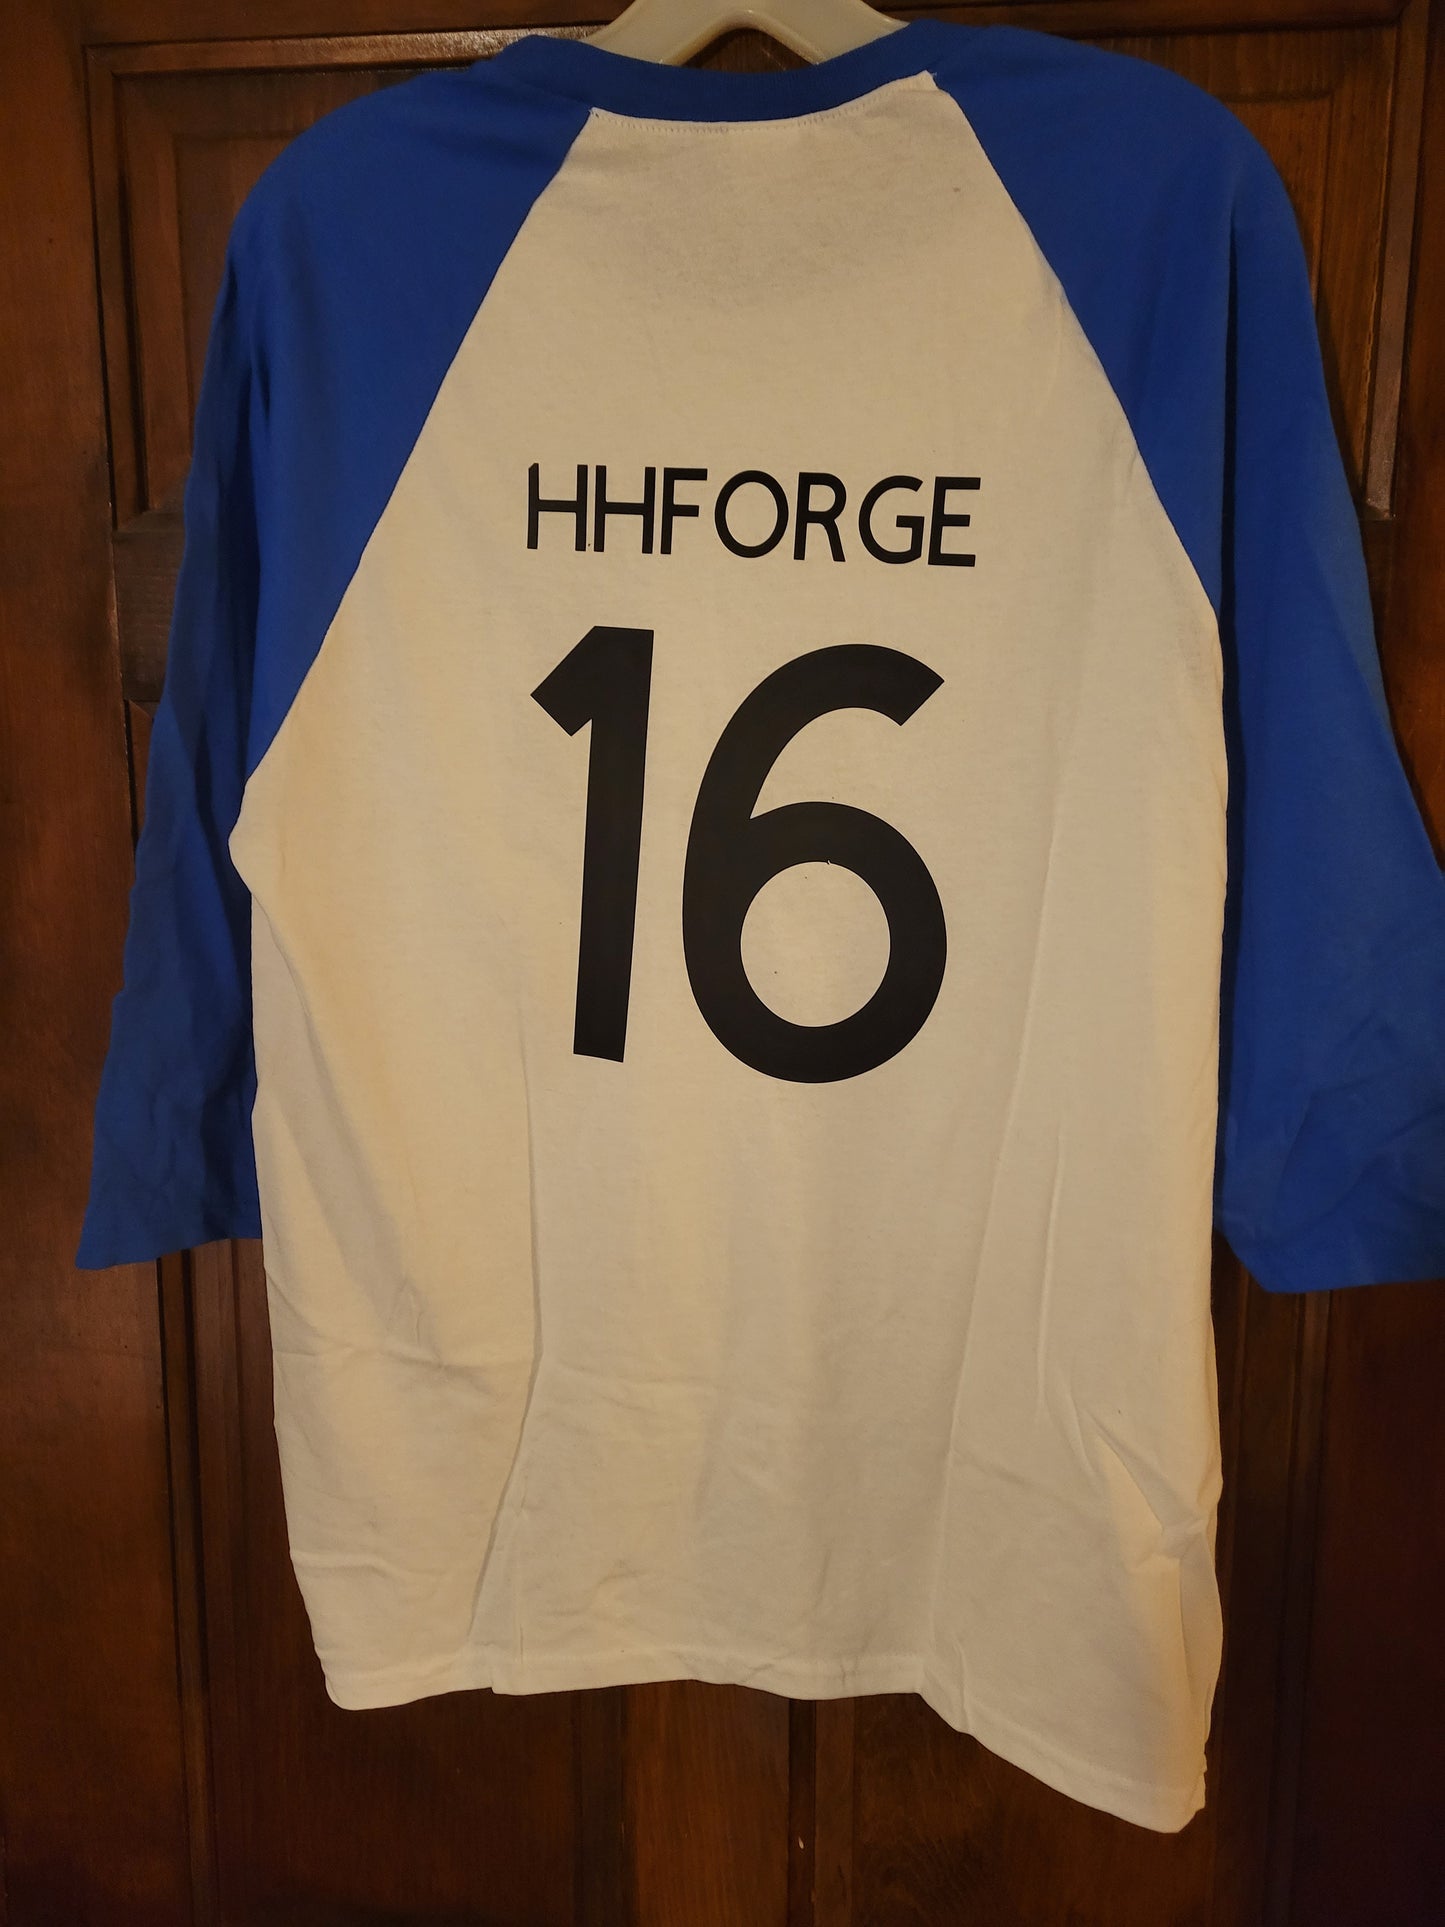 Team HHForge shirts